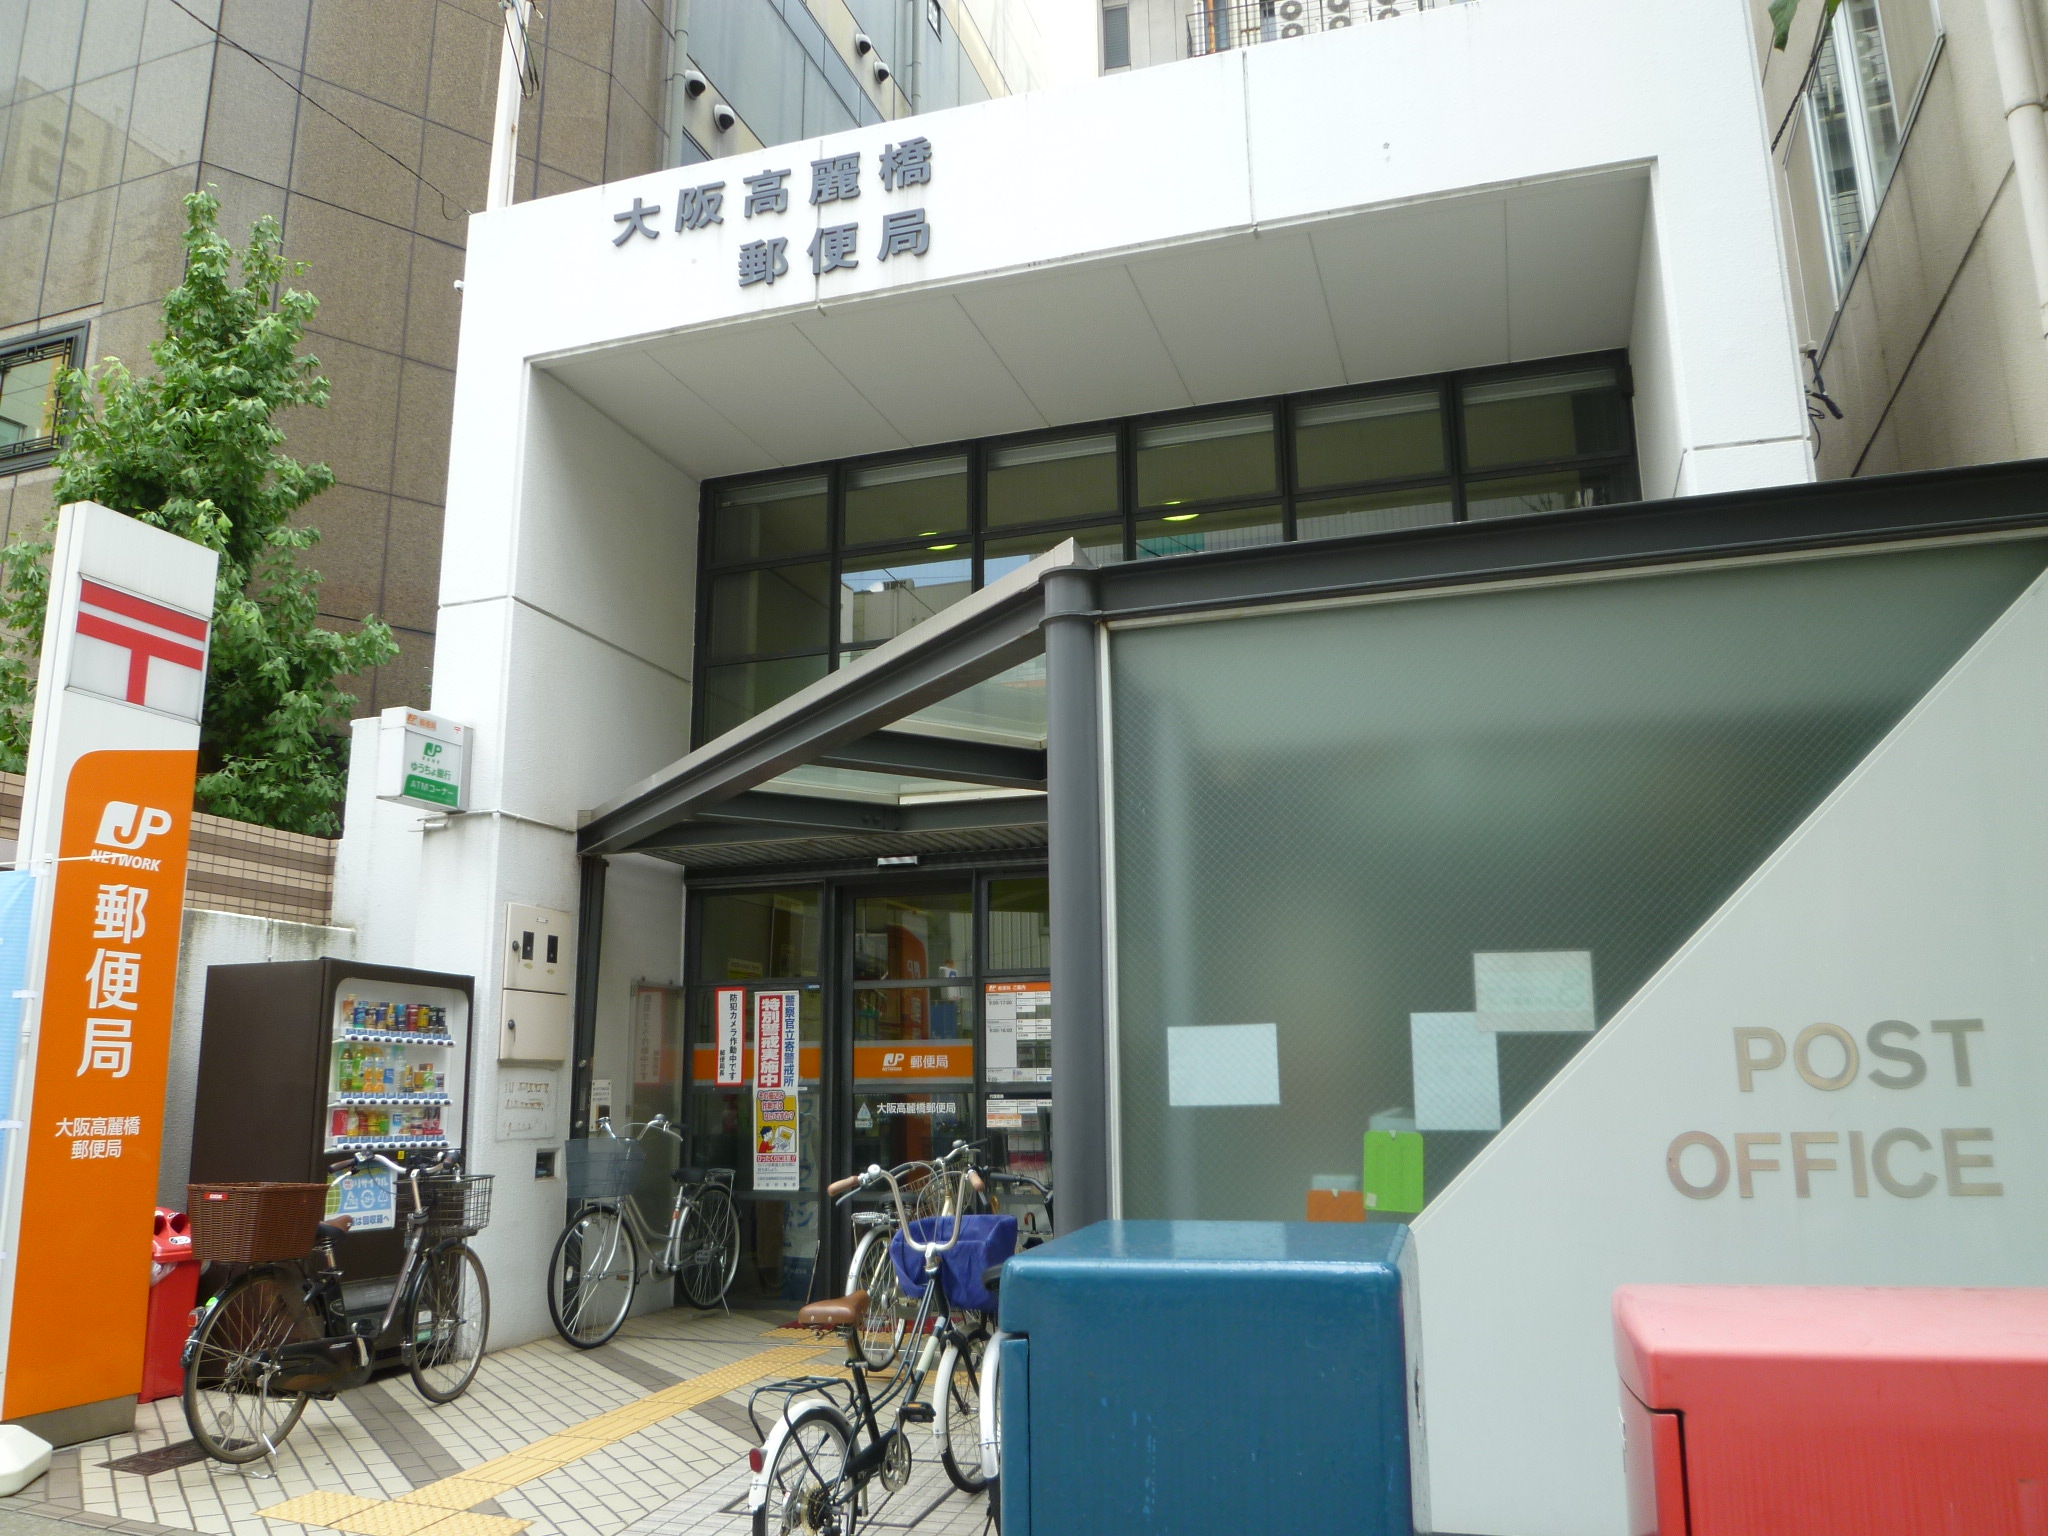 post office. 541m to Osaka Kōraibashi post office (post office)